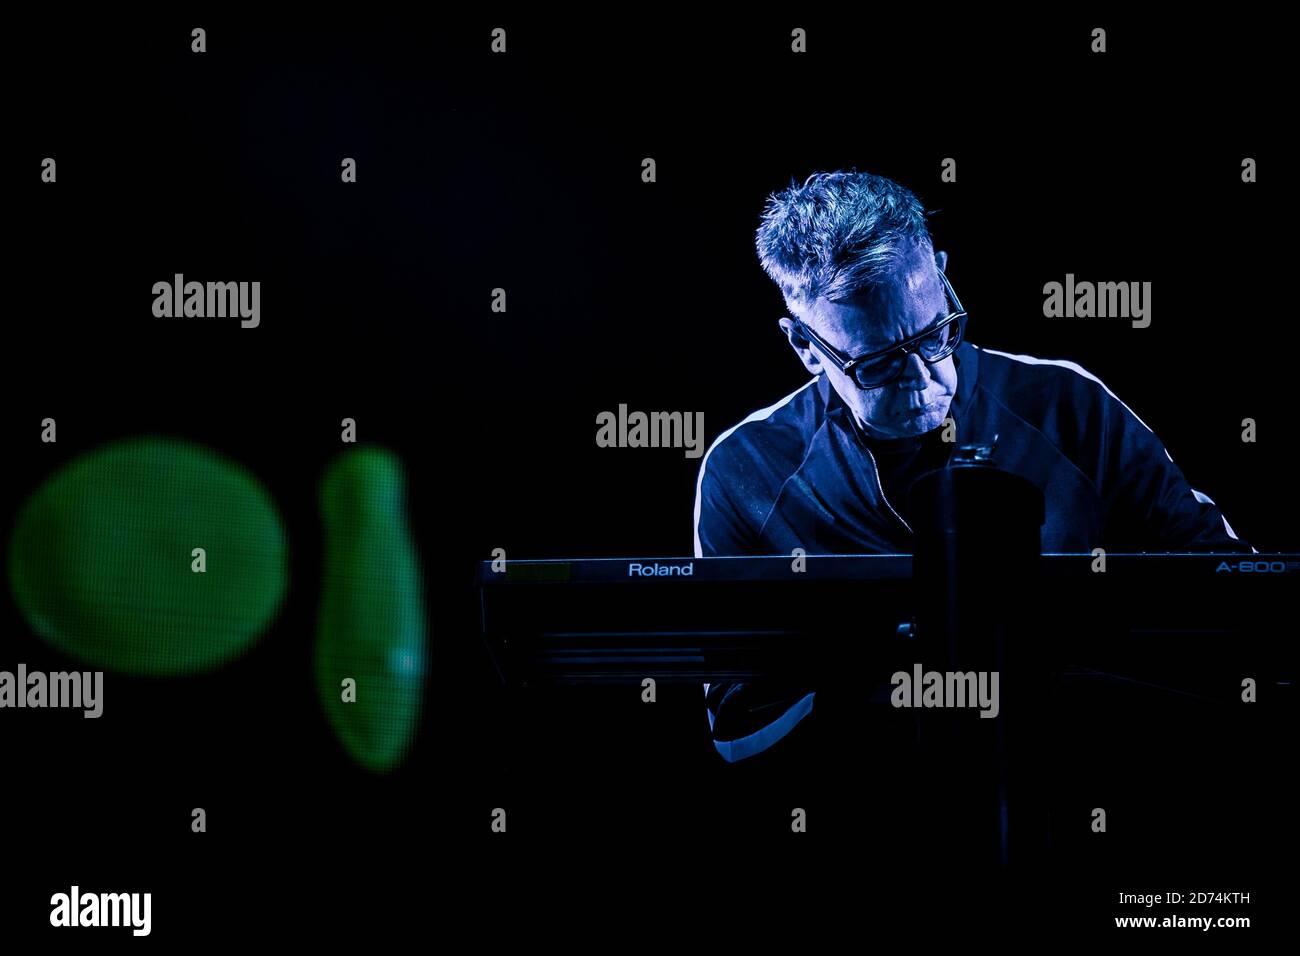 Copenaghen, Danimarca. 31 maggio 2017. La band inglese Depeche Mode esegue un concerto dal vivo al Telia Parken di Copenhagen. Qui il compositore e tastierista Andy Fletcher è visto dal vivo sul palco. (Foto: Gonzales Photo - Lasse Lagoni). Foto Stock